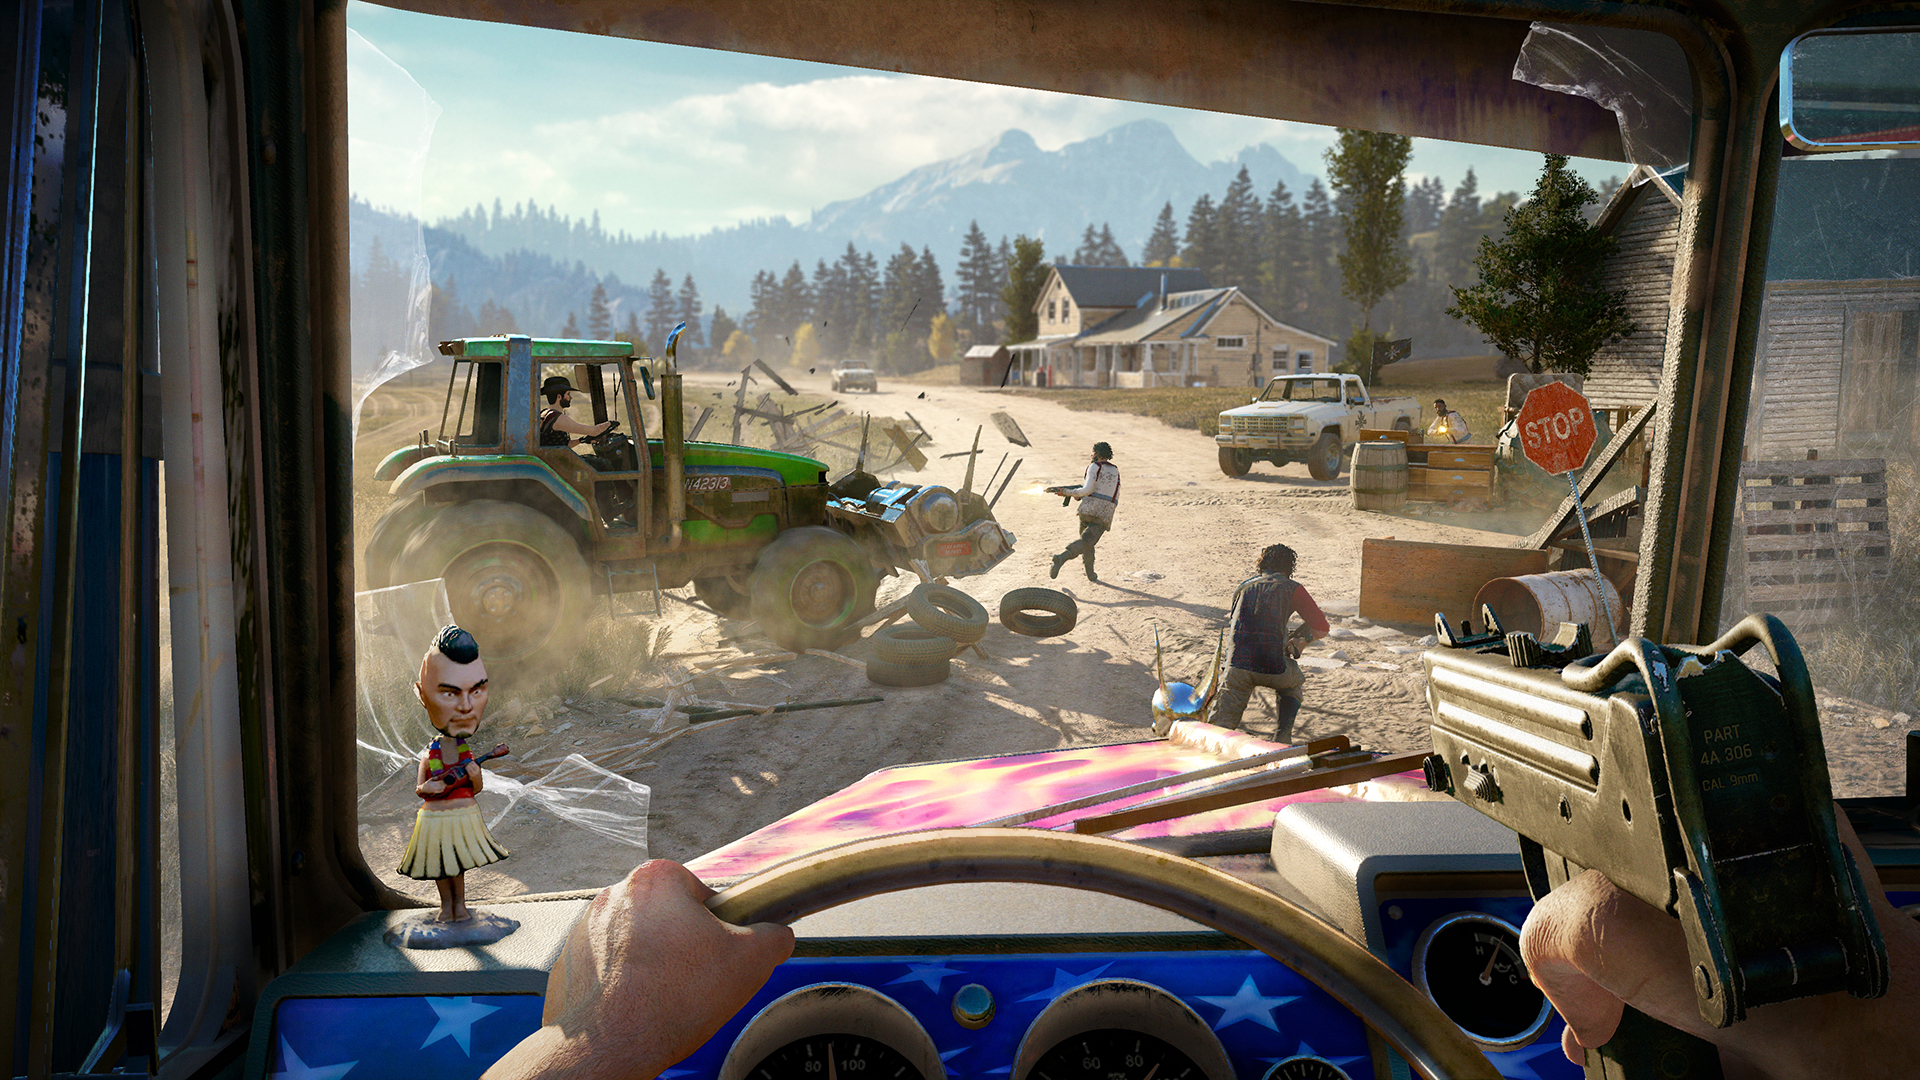 Far Cry 5 on Steam Deck 